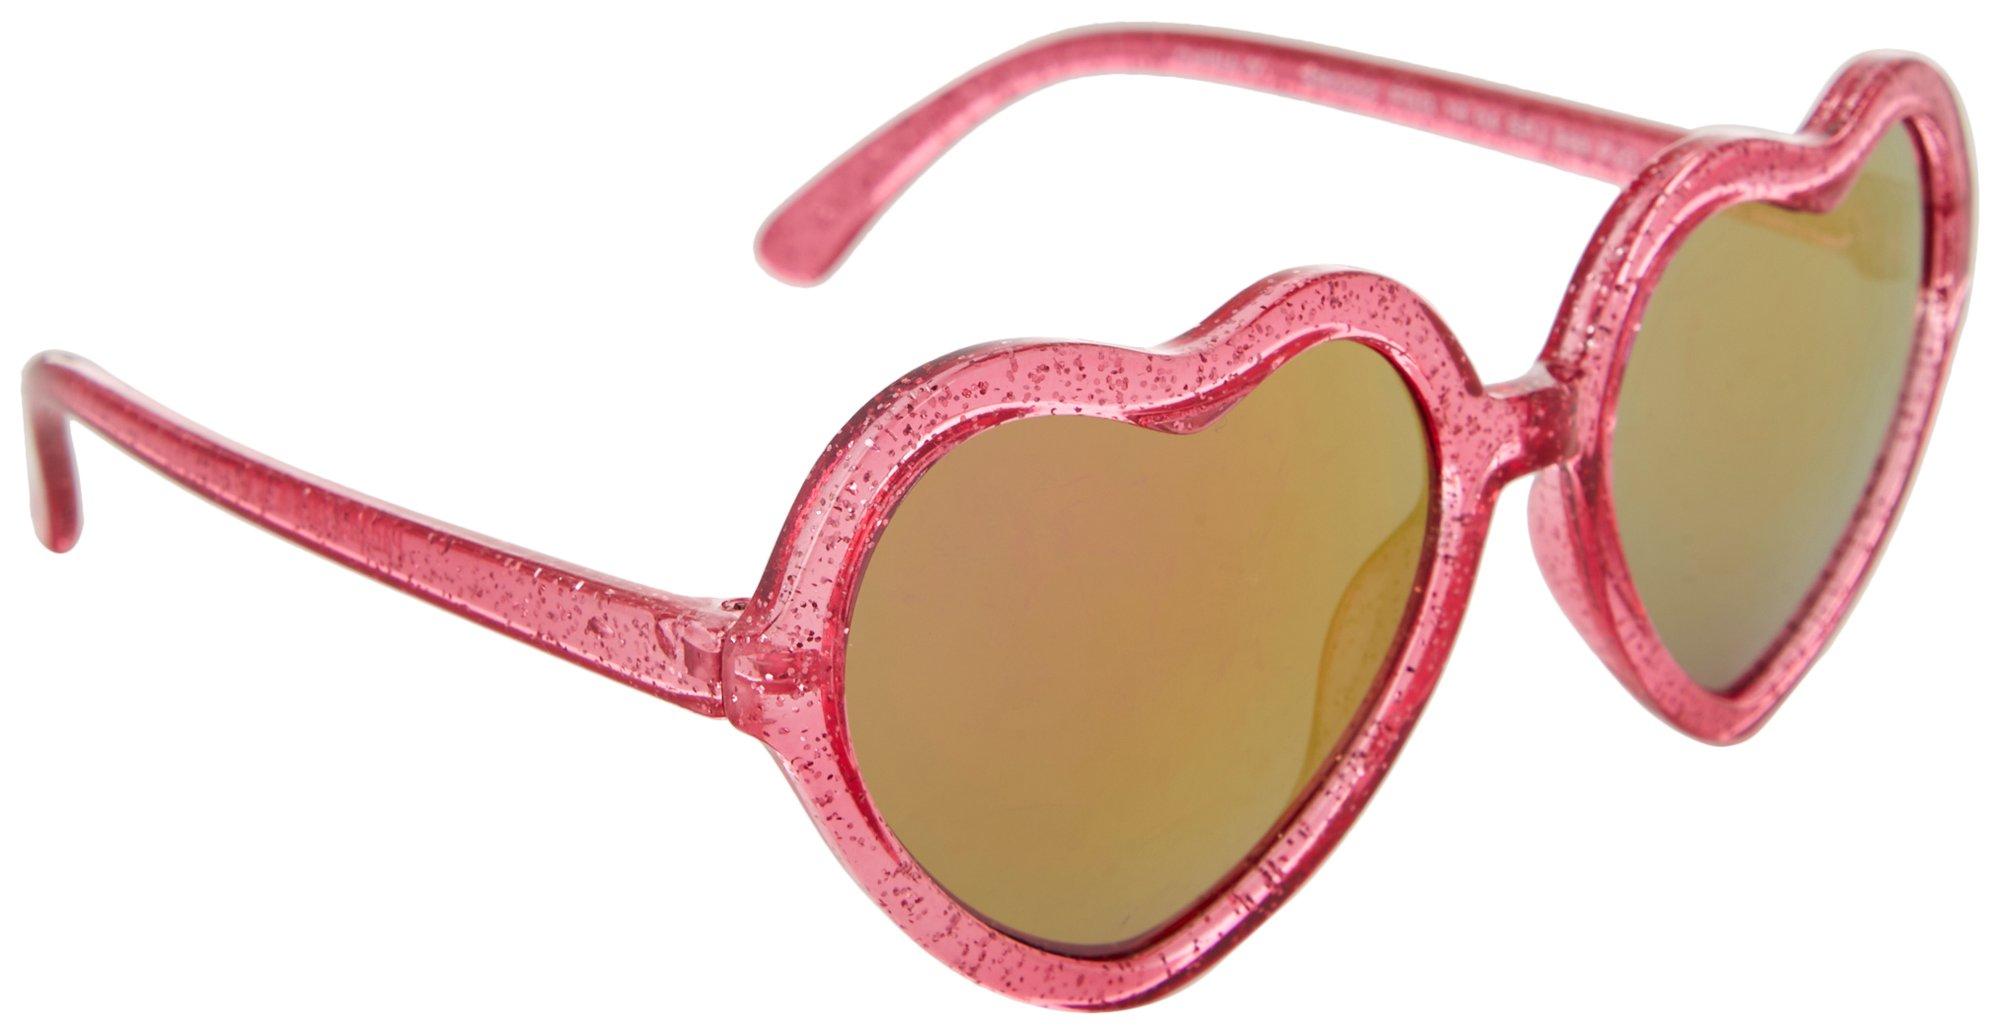 Girls Glittered Heart Shape Sunglasses